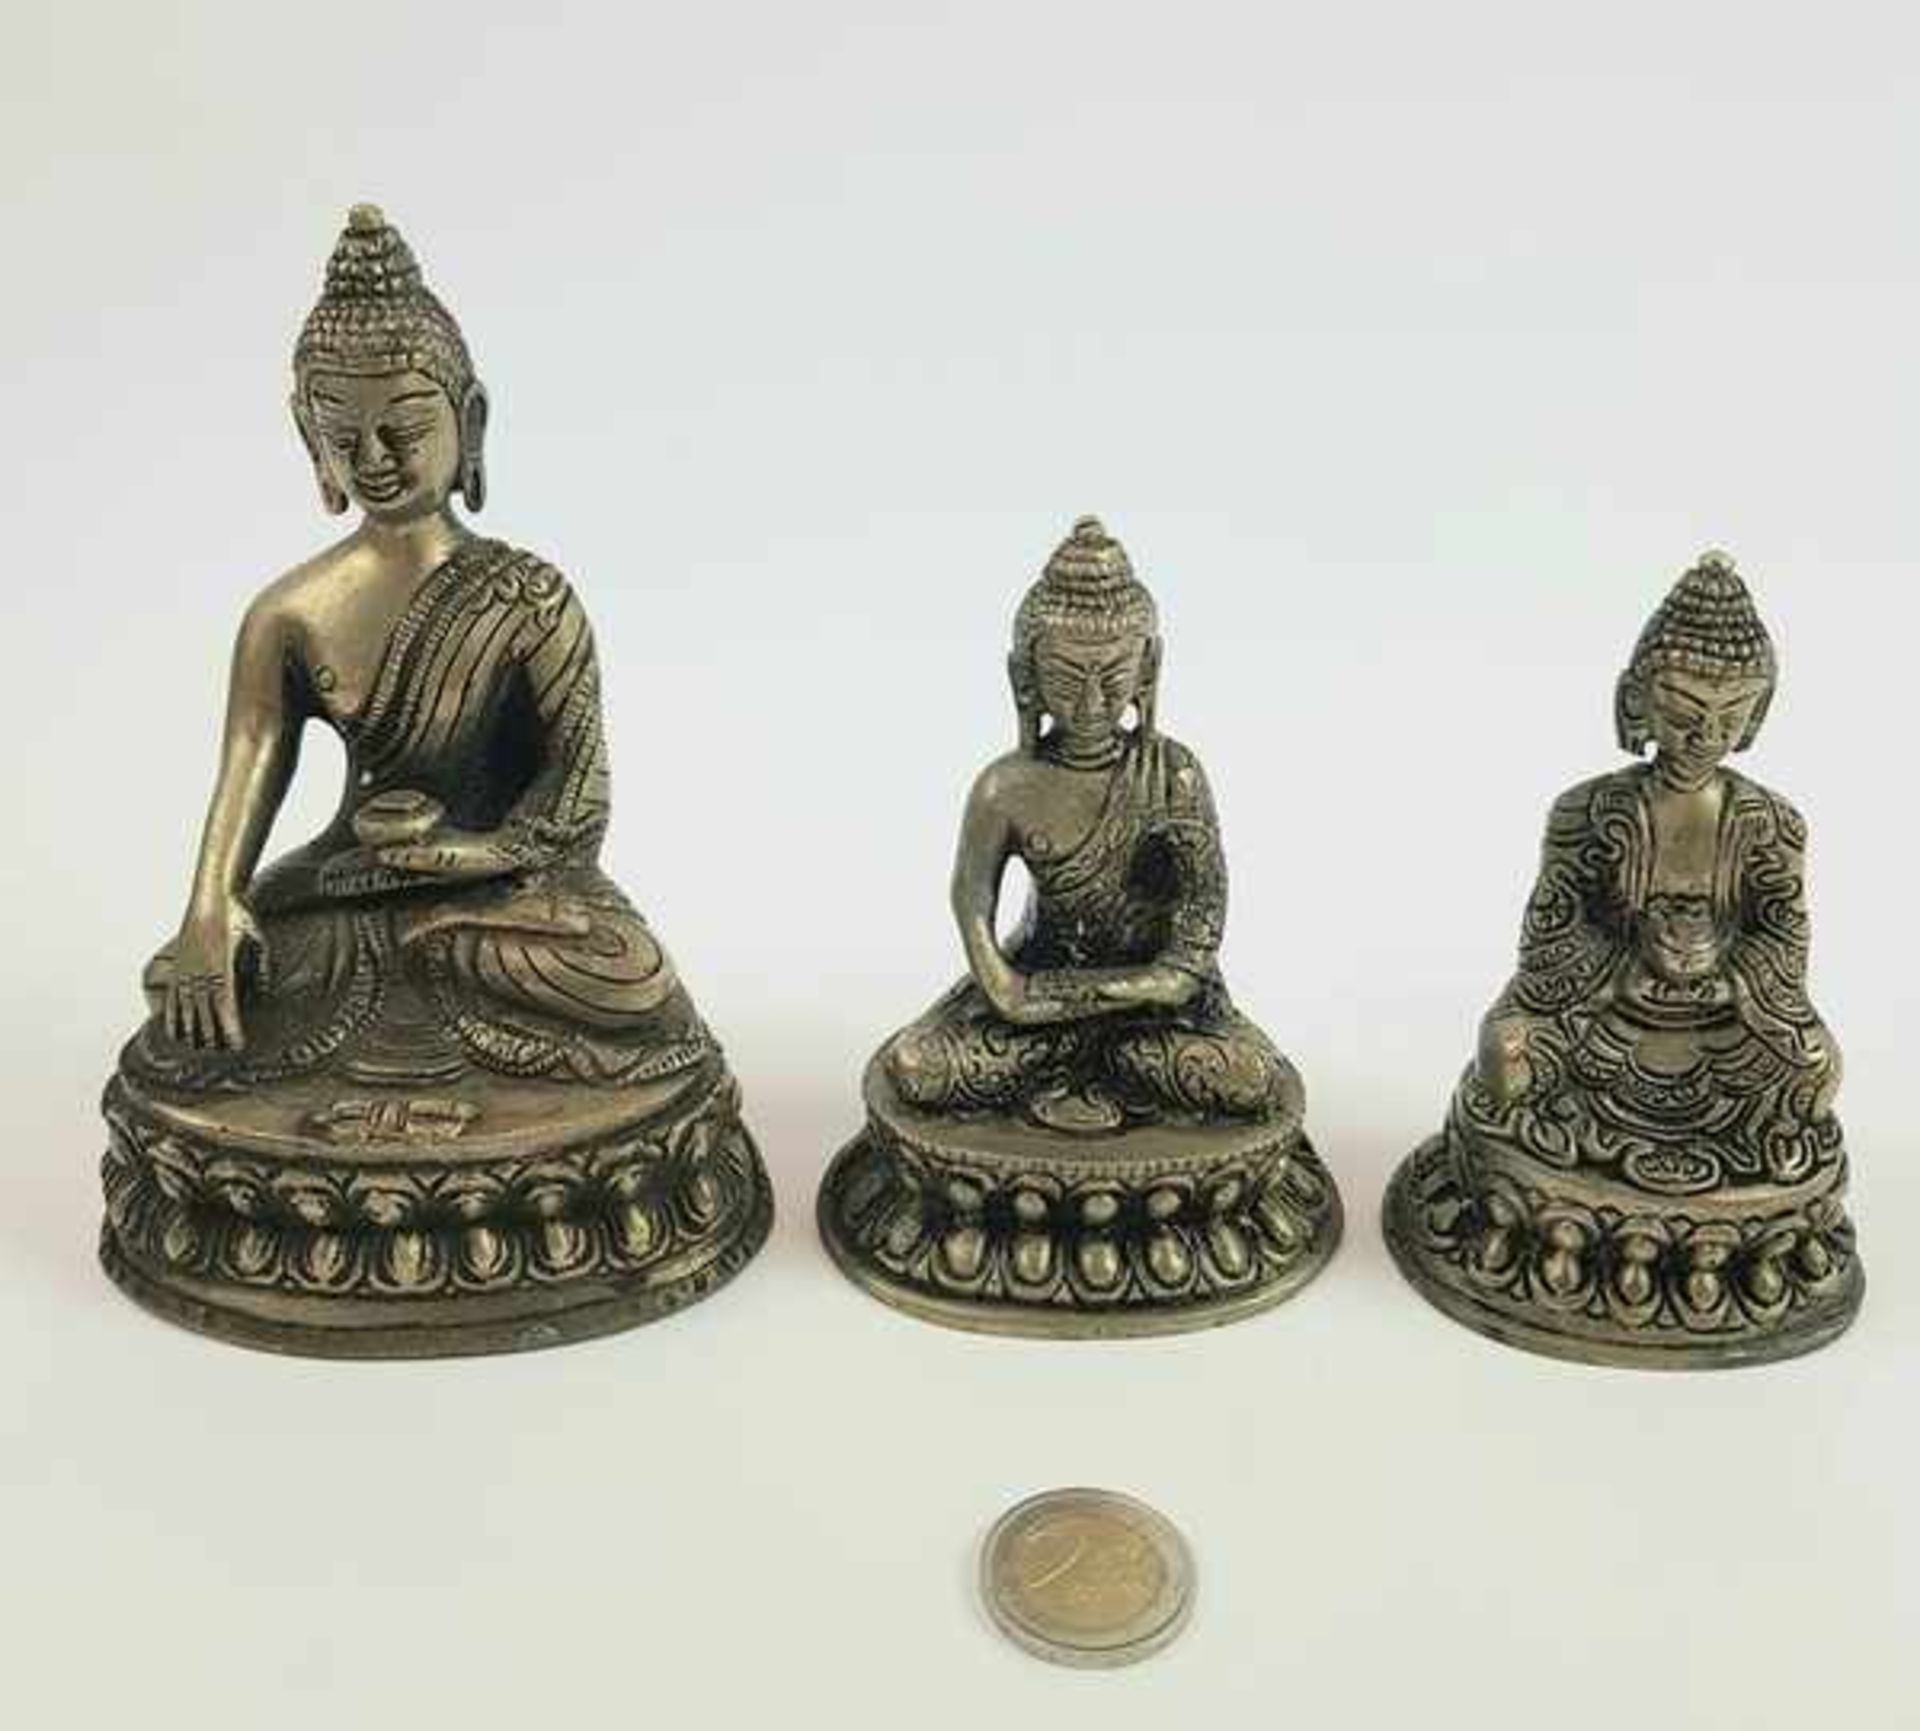 (Aziatica) Metalen Boeddha beelden, China, eind 20e eeuw - Bild 2 aus 8